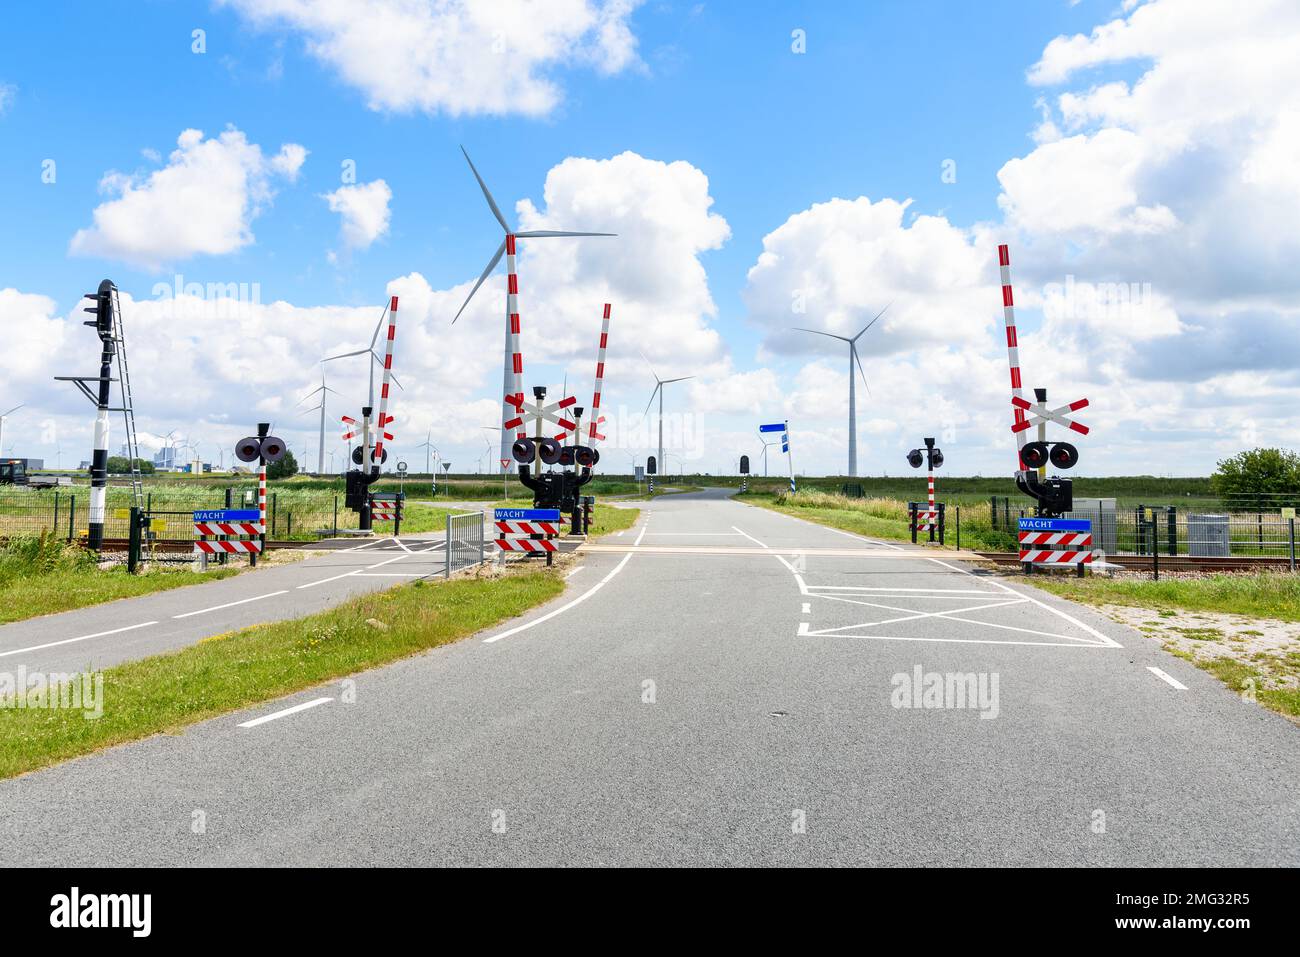 Bahnübergang mit Signalen und Warnschildern entlang einer Straße und einer Fahrradspur auf dem Land der Niederlande. Ein Windpark befindet sich im Hintergrund. Stockfoto